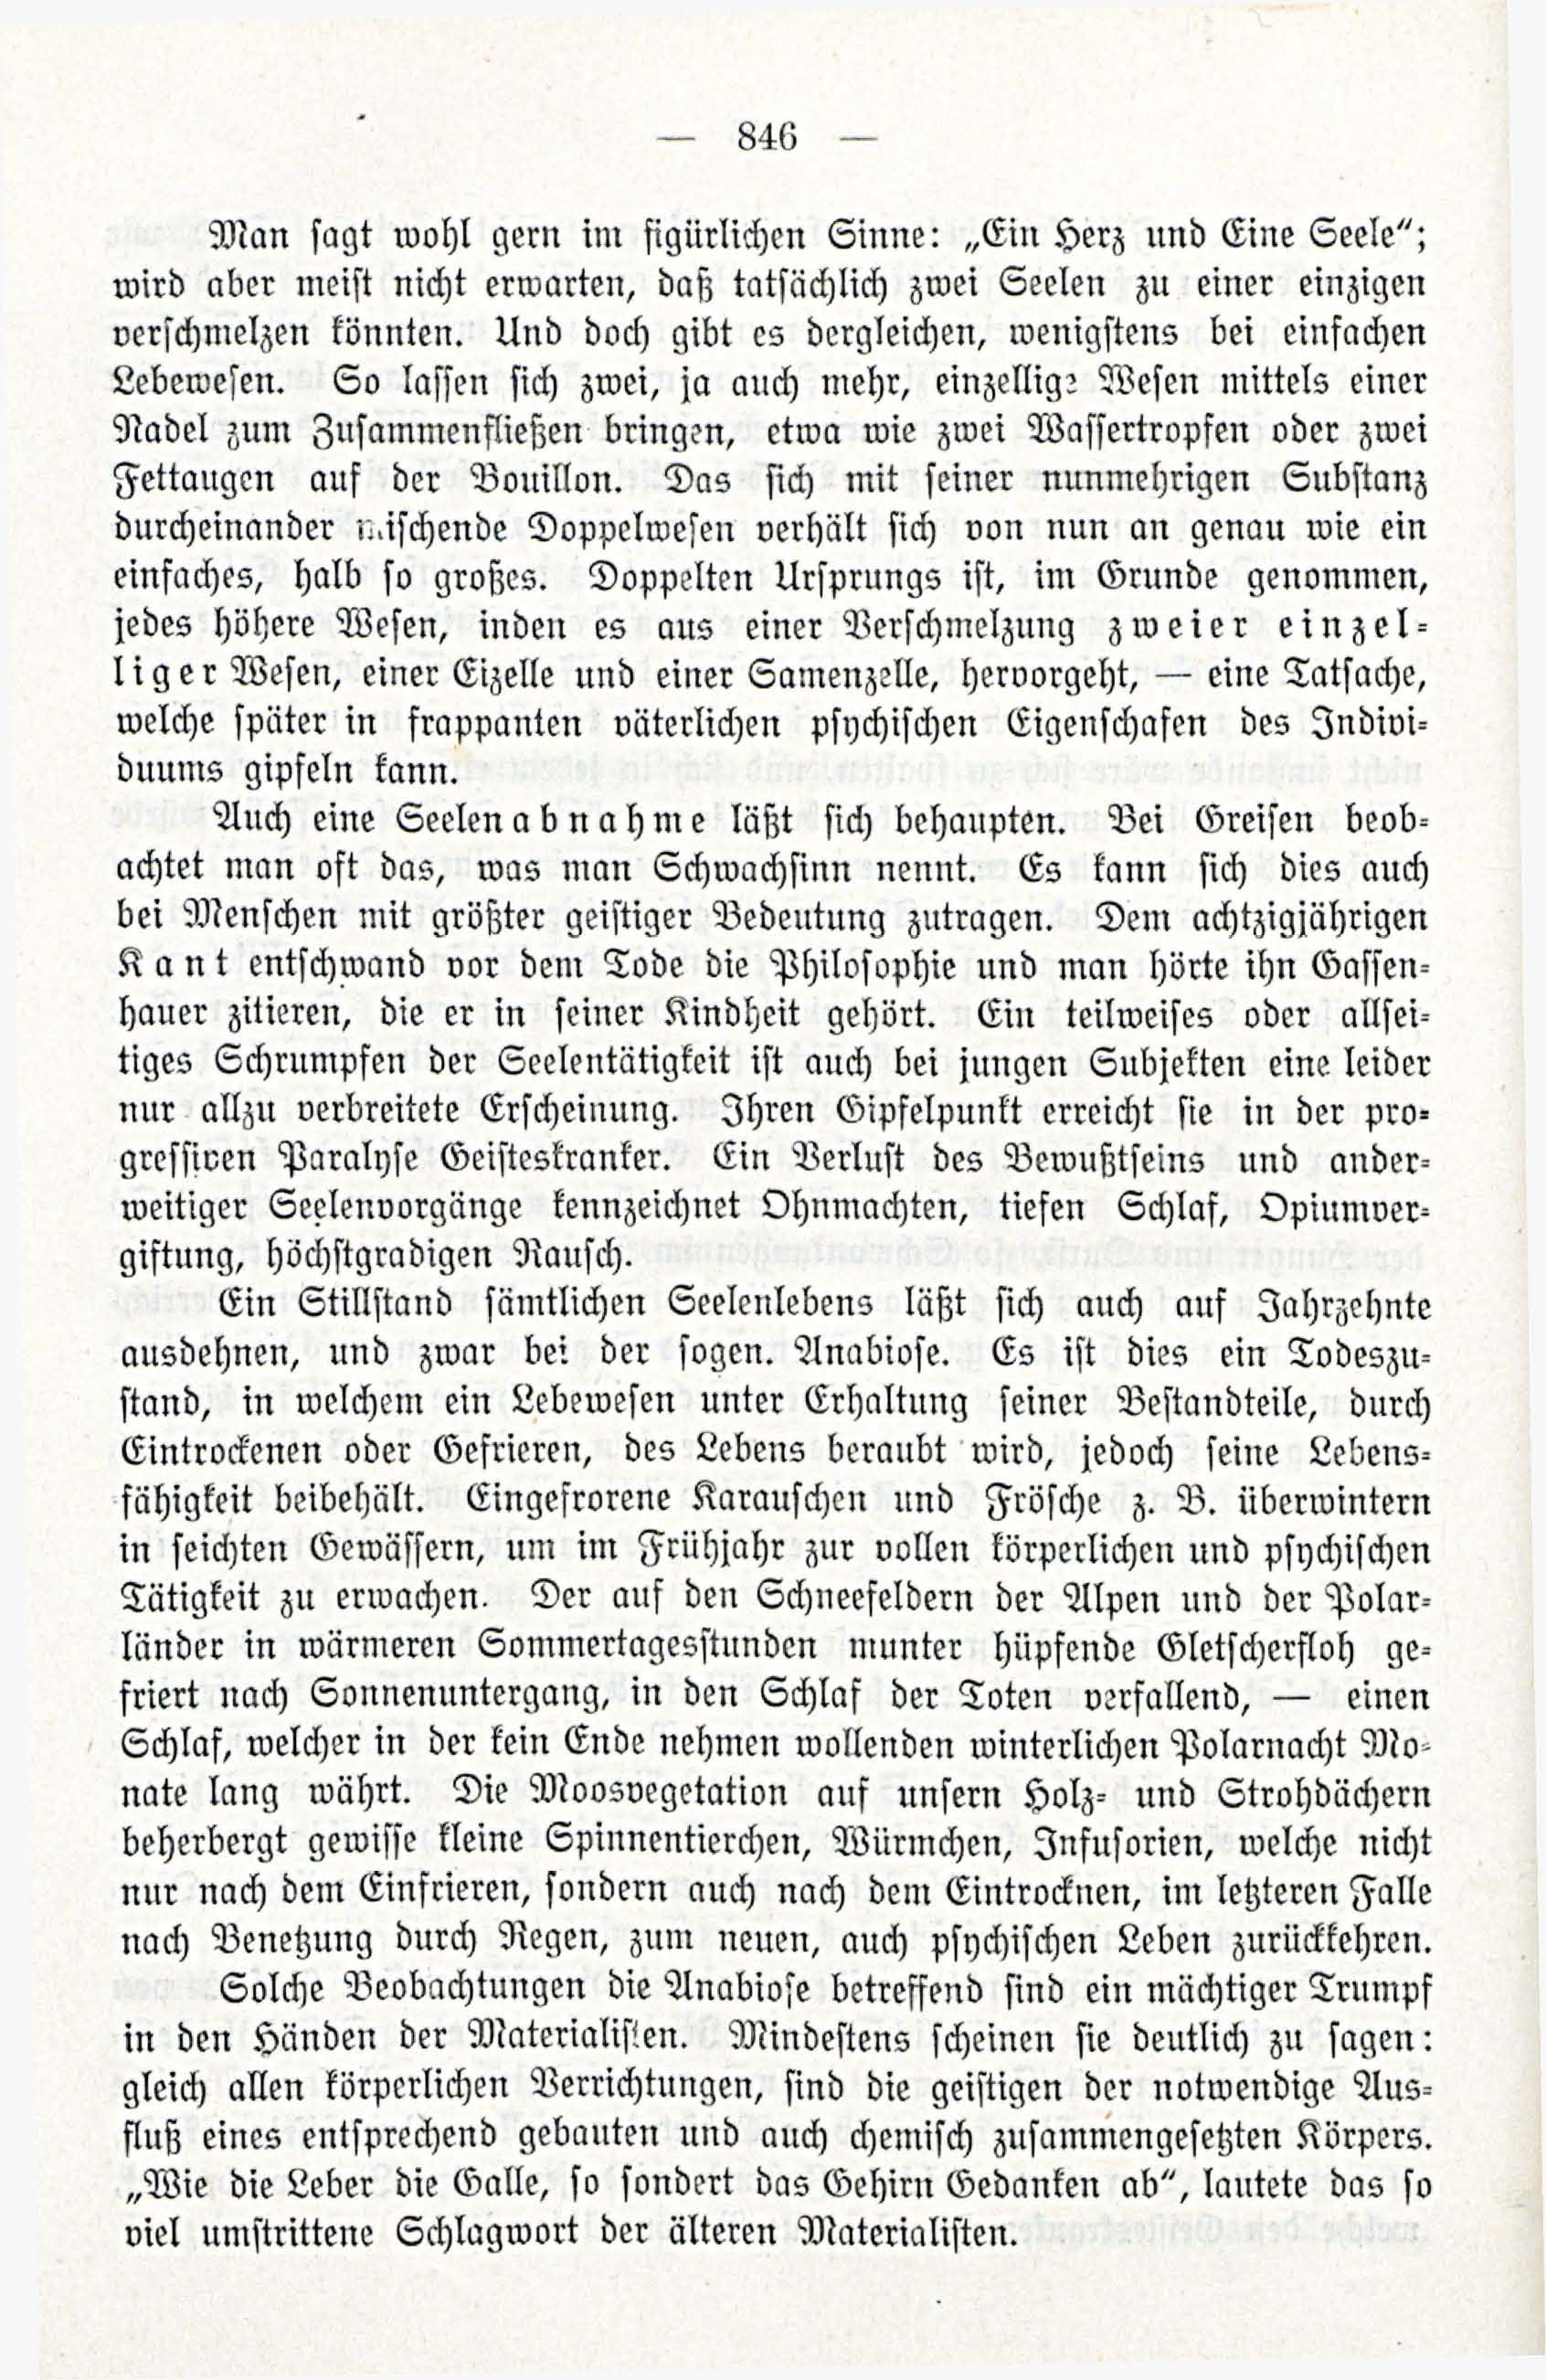 Deutsche Monatsschrift für Russland [3/12] (1914) | 62. (846) Main body of text